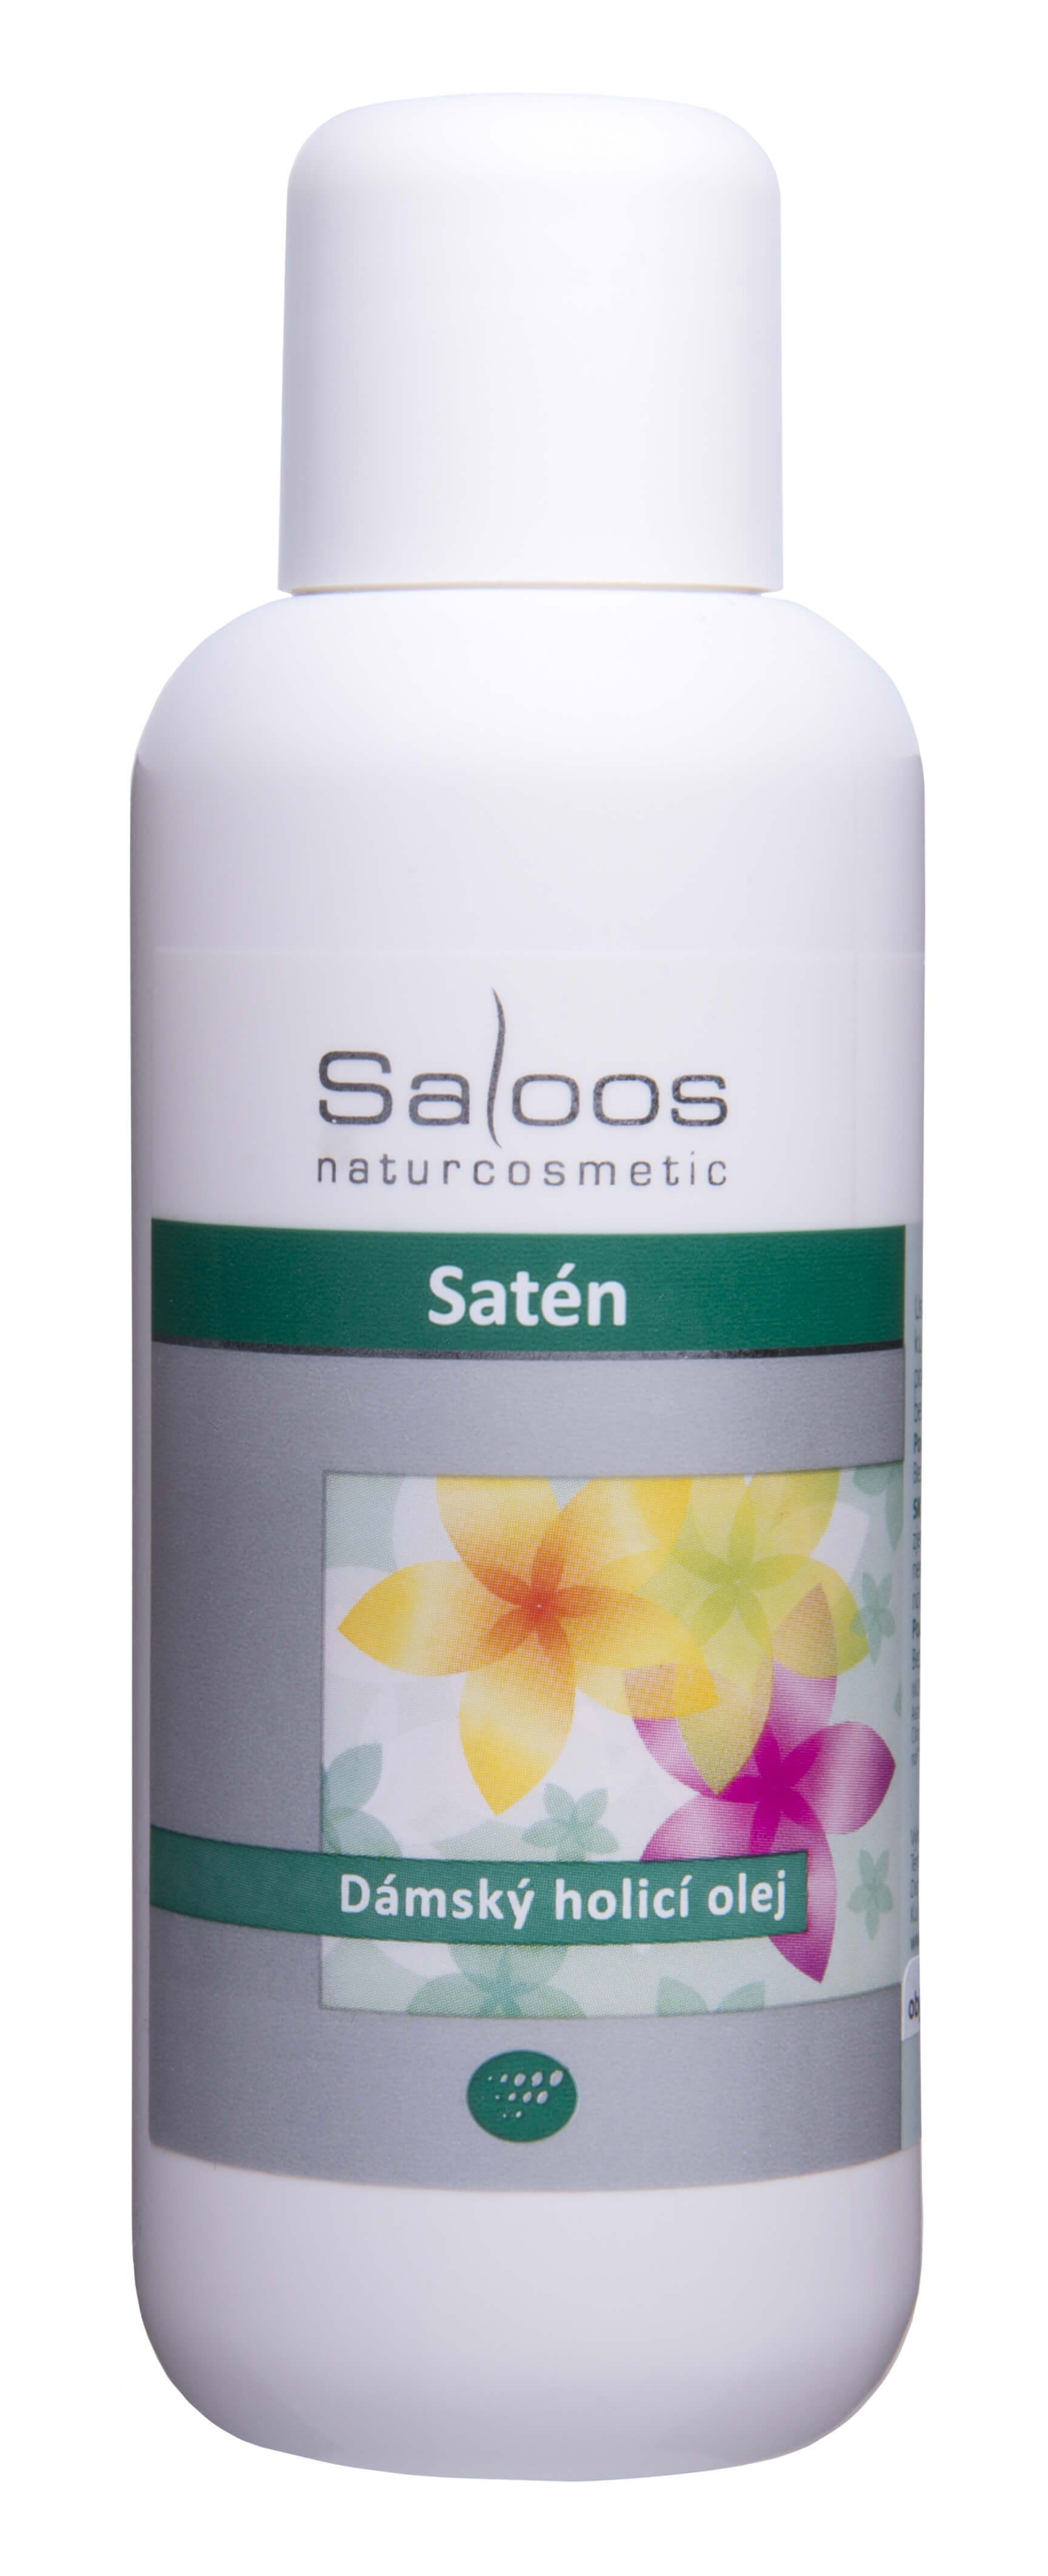 Zobrazit detail výrobku Saloos Satén - dámský holicí olej 250 ml + 2 měsíce na vrácení zboží